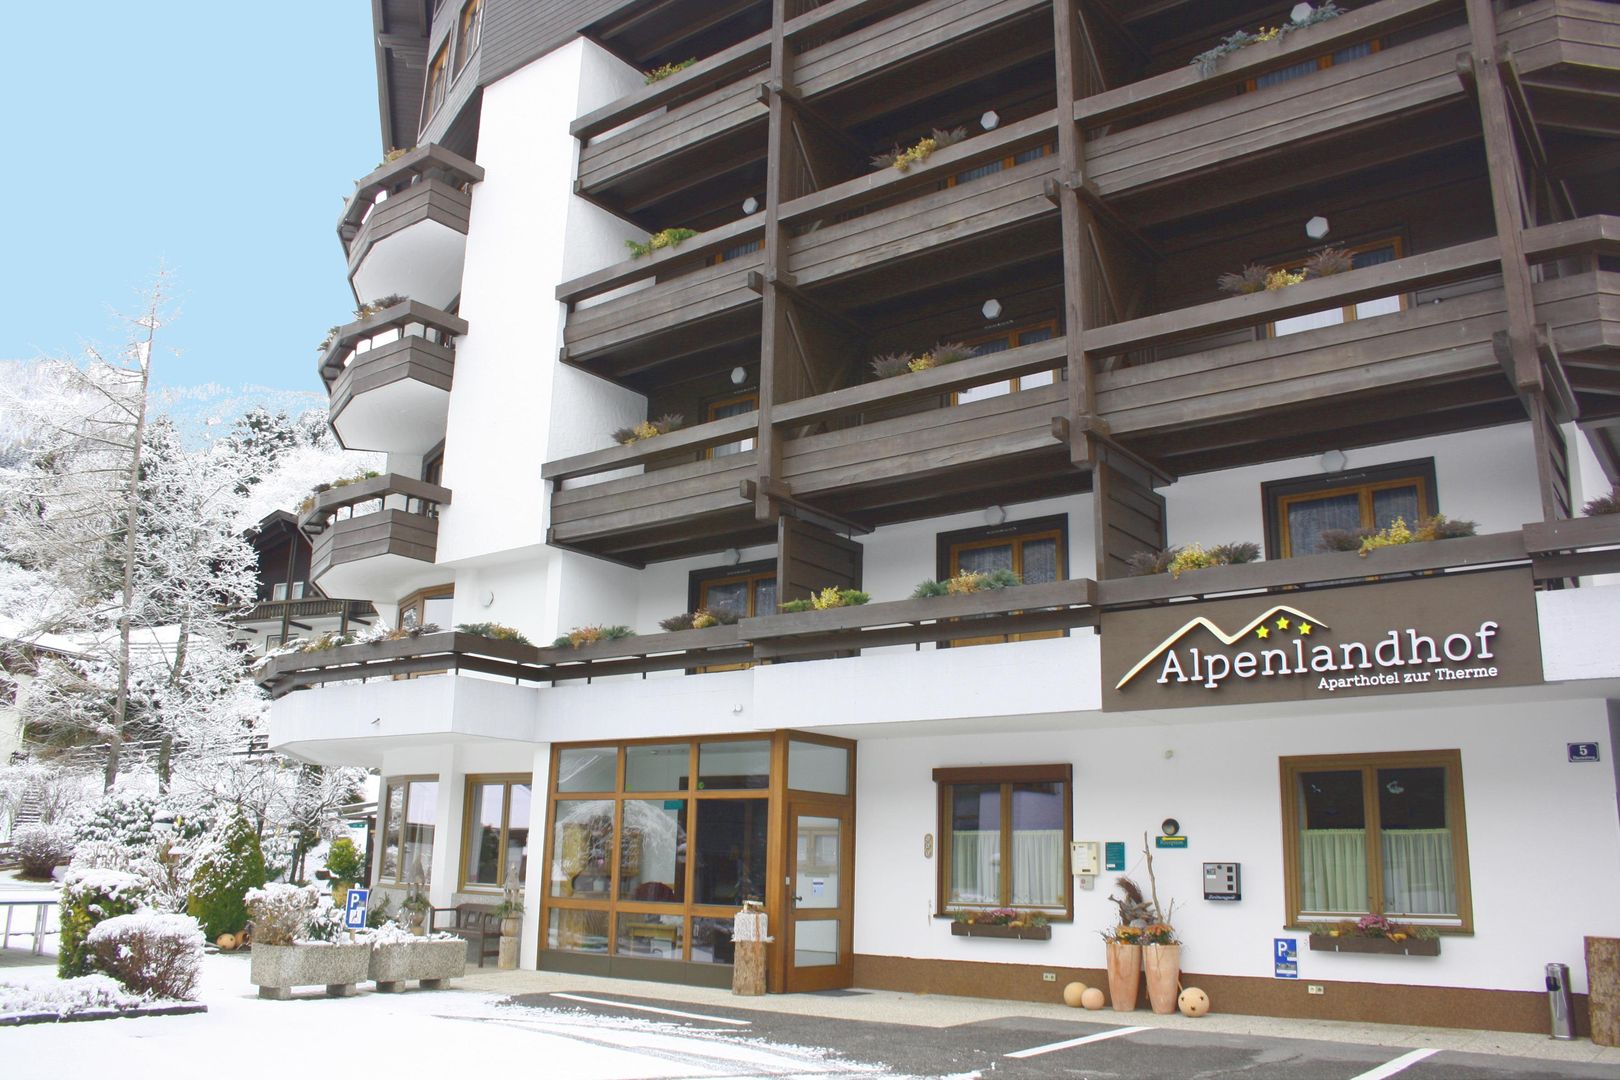 Slide1 - Appartements Alpenlandhof